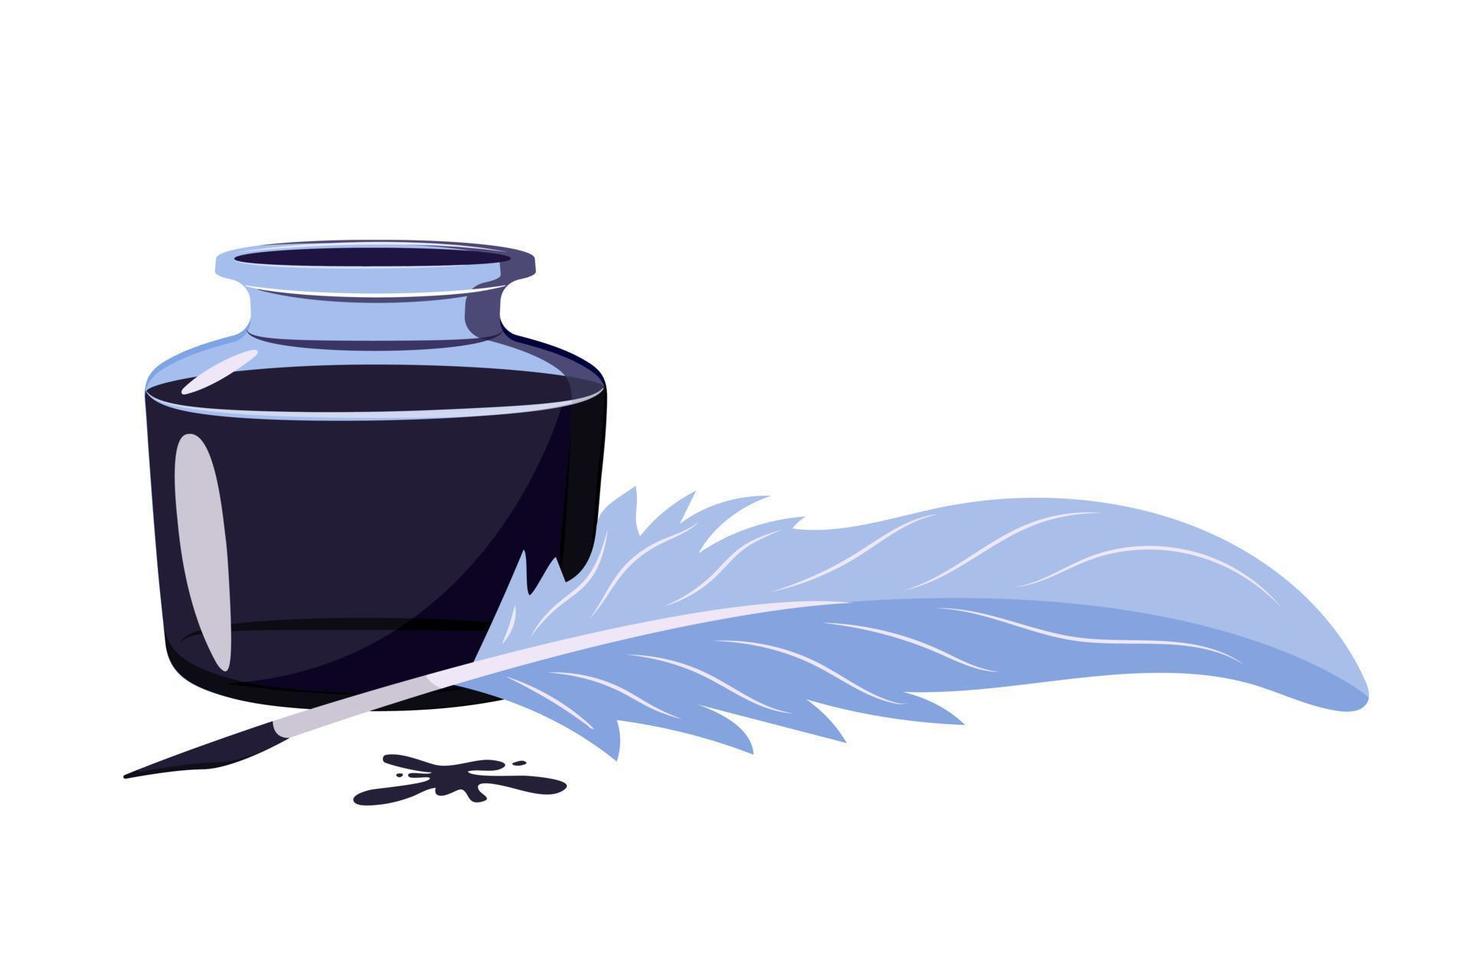 pluma con tinta azul. símbolo de la poesía tintero sobre fondo blanco. ilustración vintage de instrumentos de escritura antiguos vector